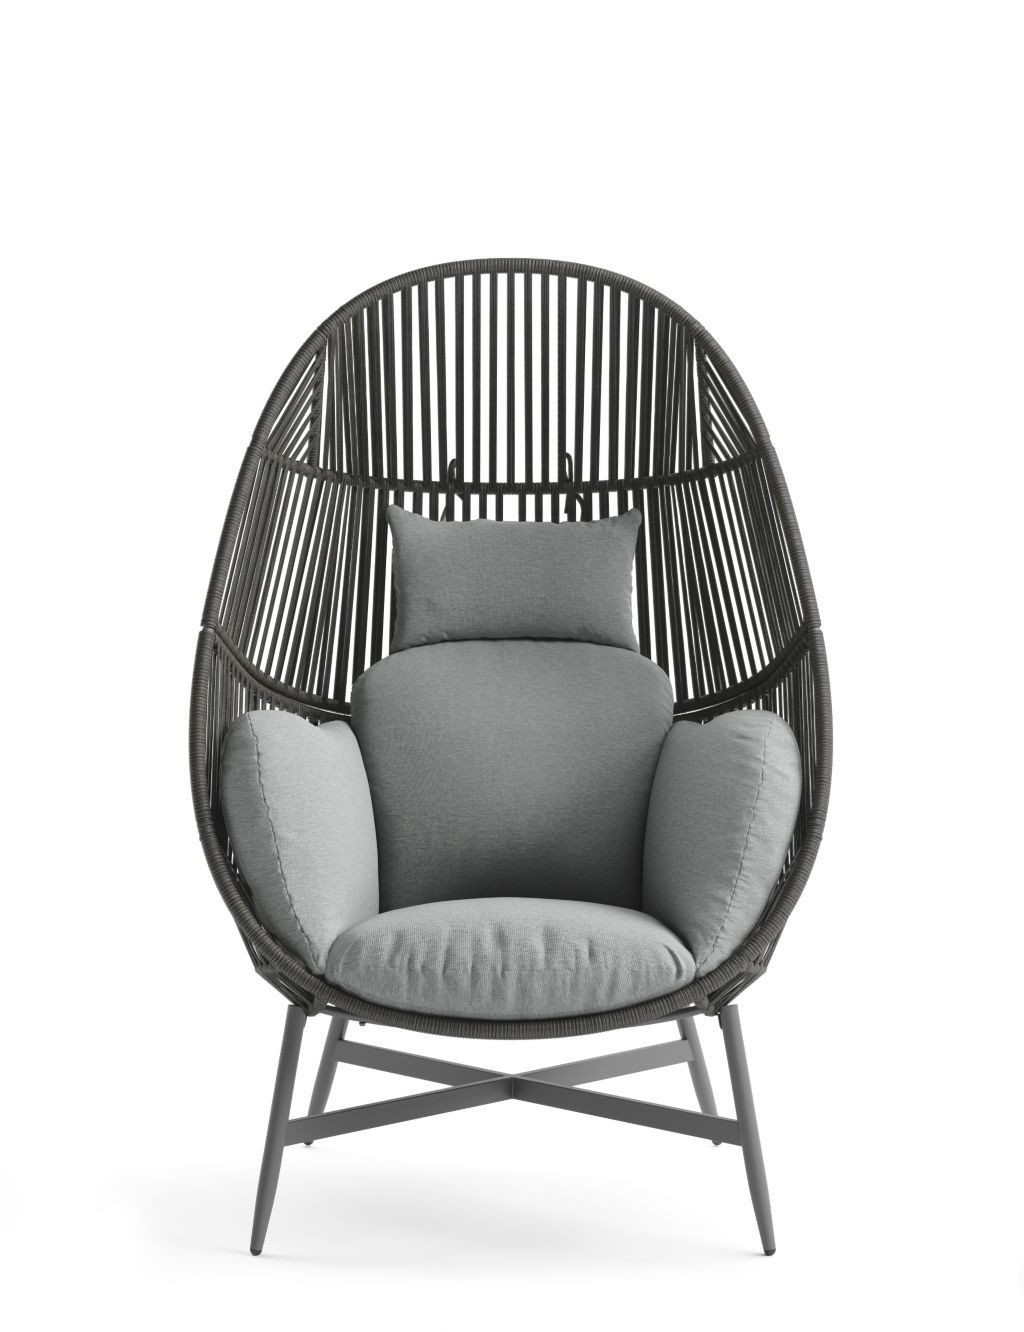 Melbourne Garden Egg Chair 1 of 5